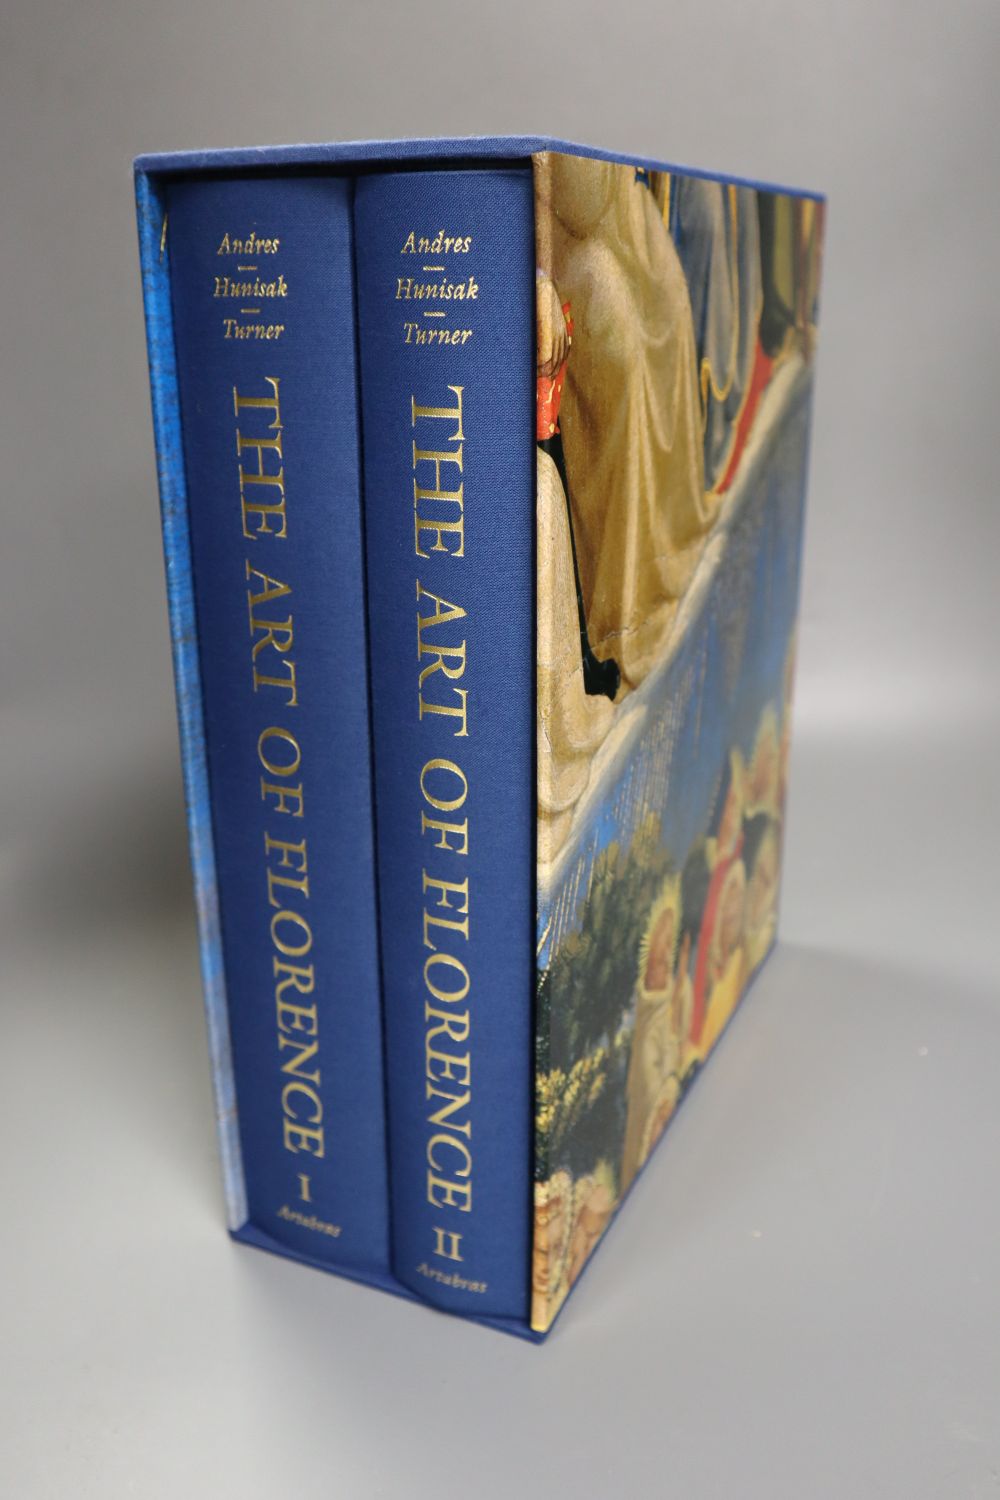 Andres, Glenn; Hunisak, John, Turner, Richard - The Art of Florence, 2 vols, folio, in slip case, Artrabas, New York and London, 1994